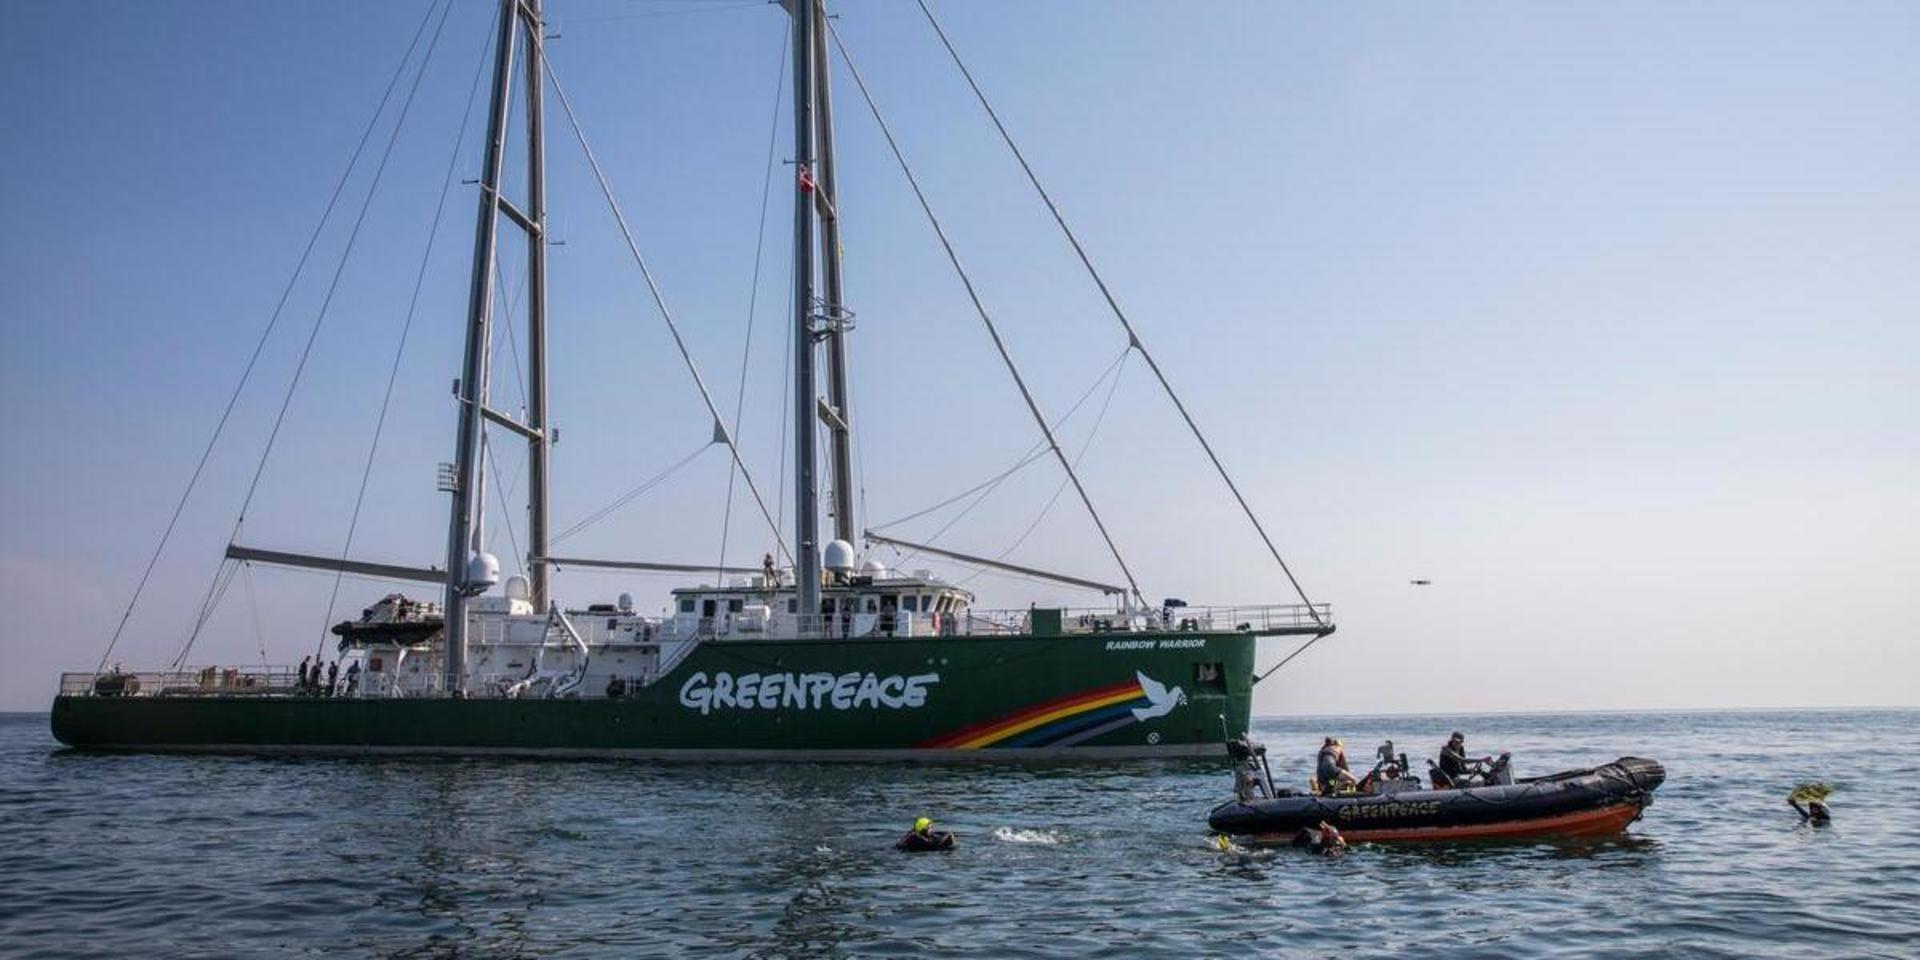 Det 60 meter långa segelfartyget seglar året runt för att delta i klimatprotester samt dokumentera miiljöbrott.